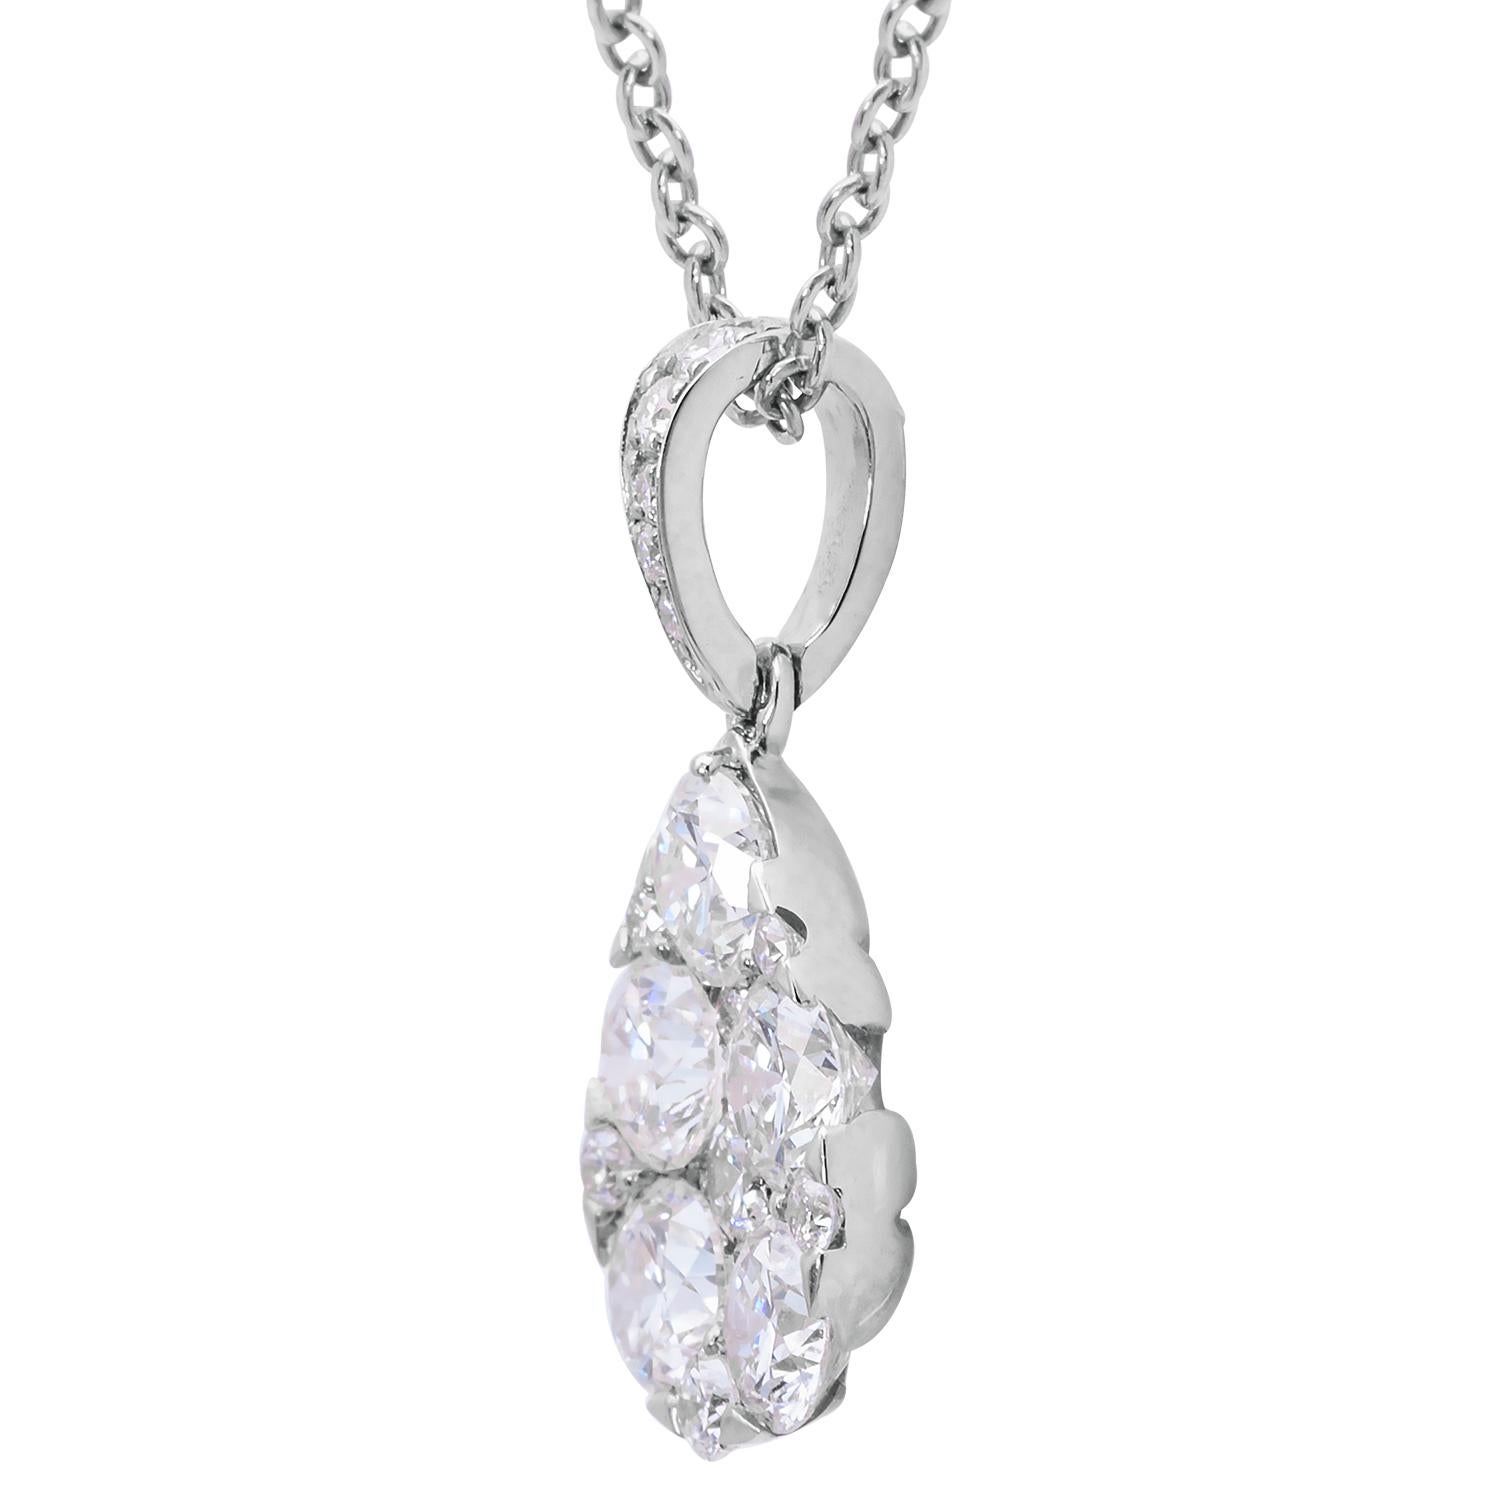 Dieser atemberaubende Diamantanhänger besteht aus 17 Diamanten der Farbe G (VS2) mit einem Gesamtgewicht von 1,02 Karat, die eine tropfenförmige Form bilden und an einem diamantbesetzten Bügel hängen. Die Diamanten sind in 1,2 Gramm 18 Karat